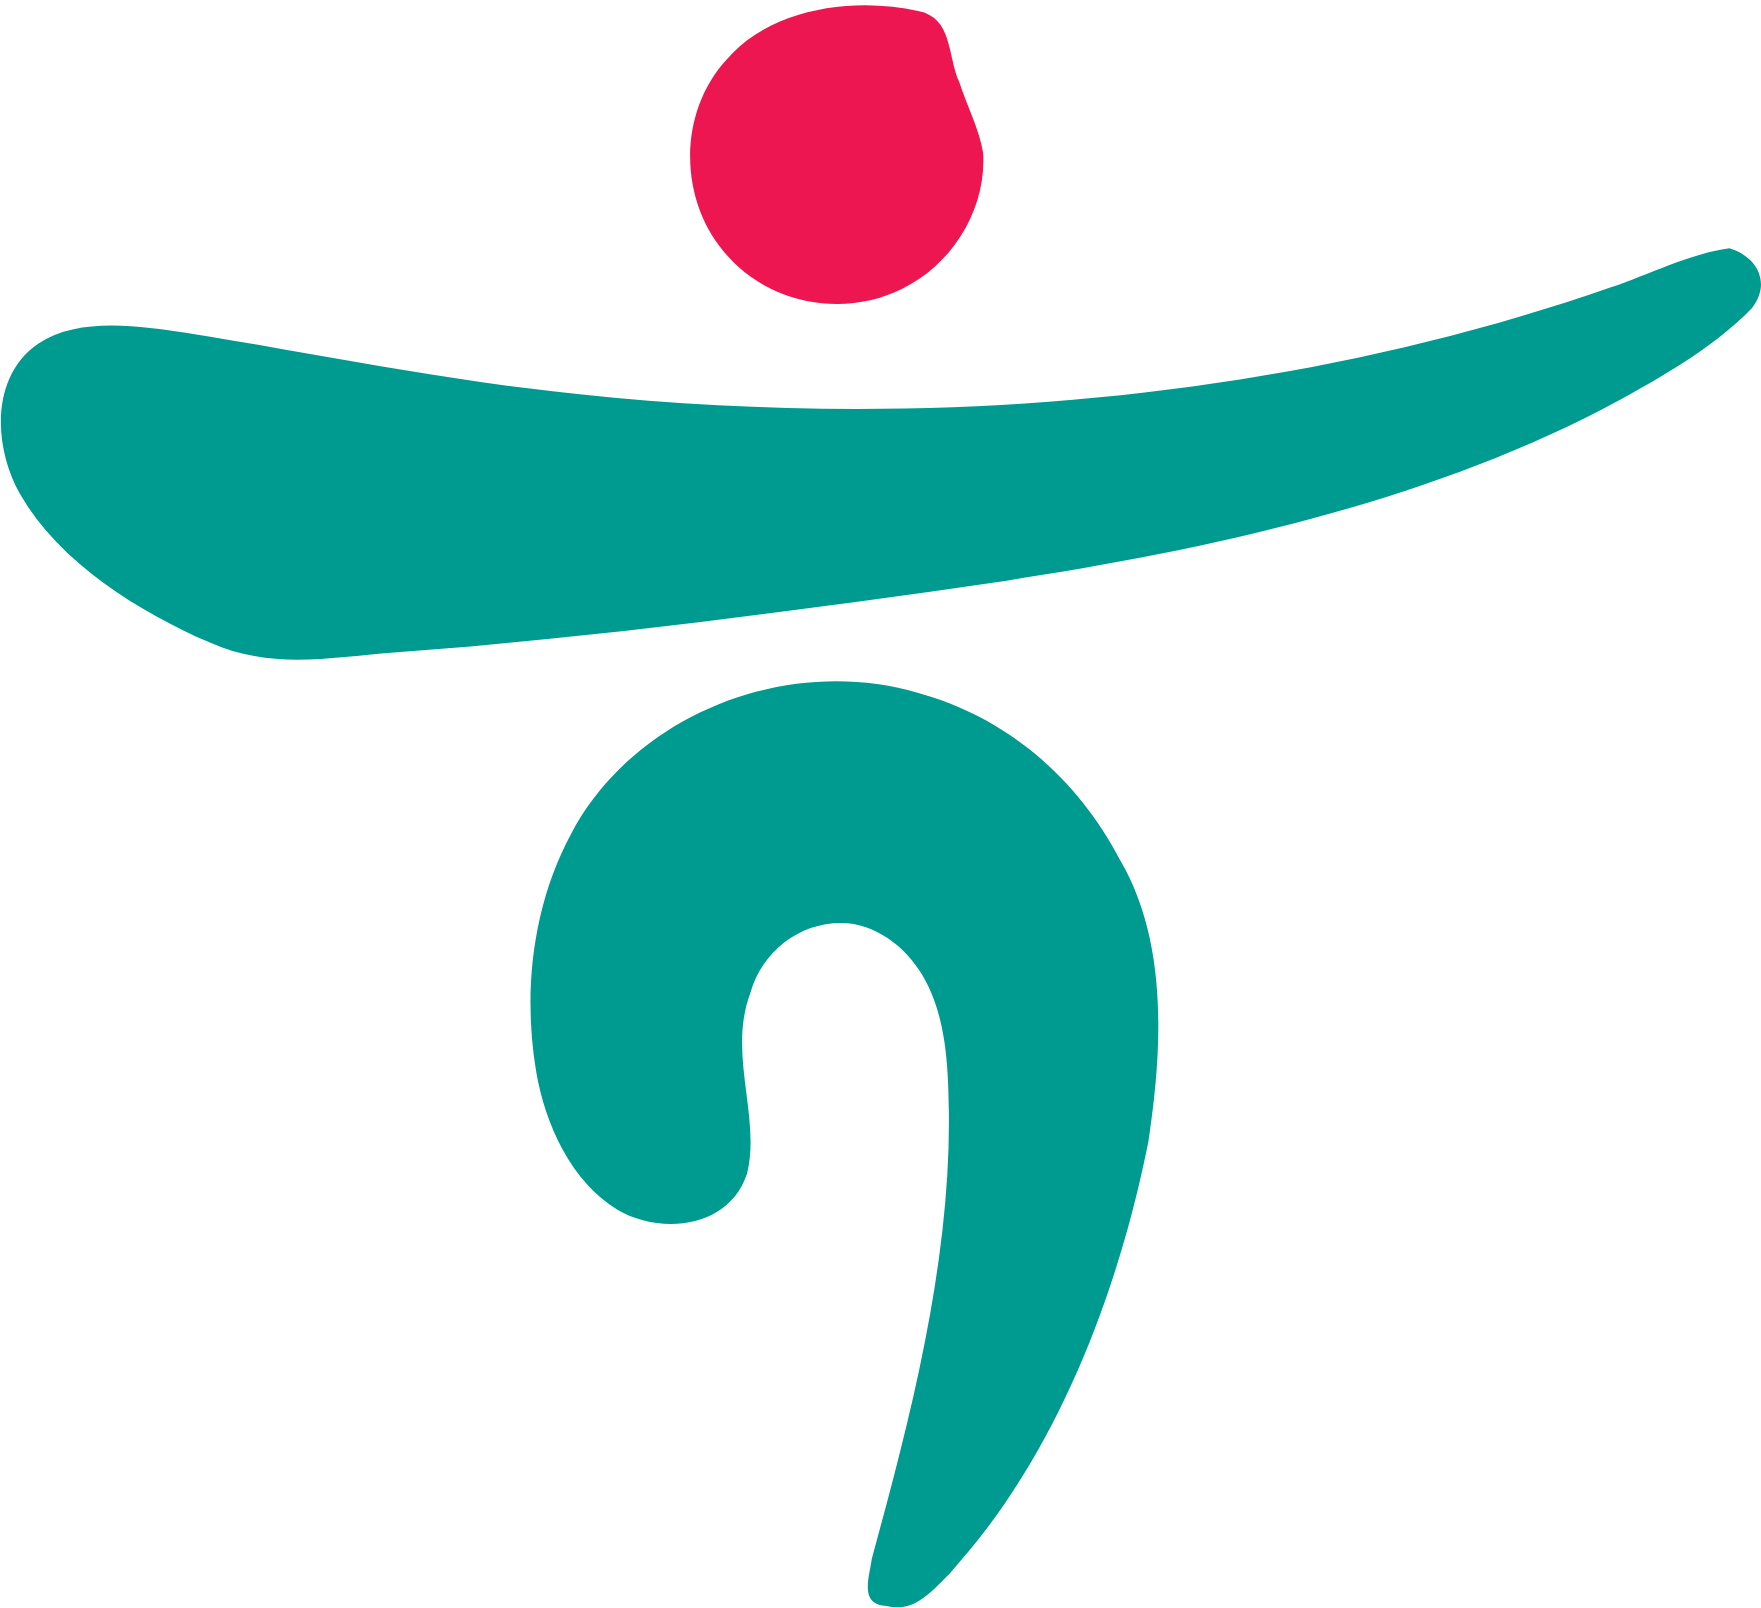 Hana Financial Group logo (transparent PNG)